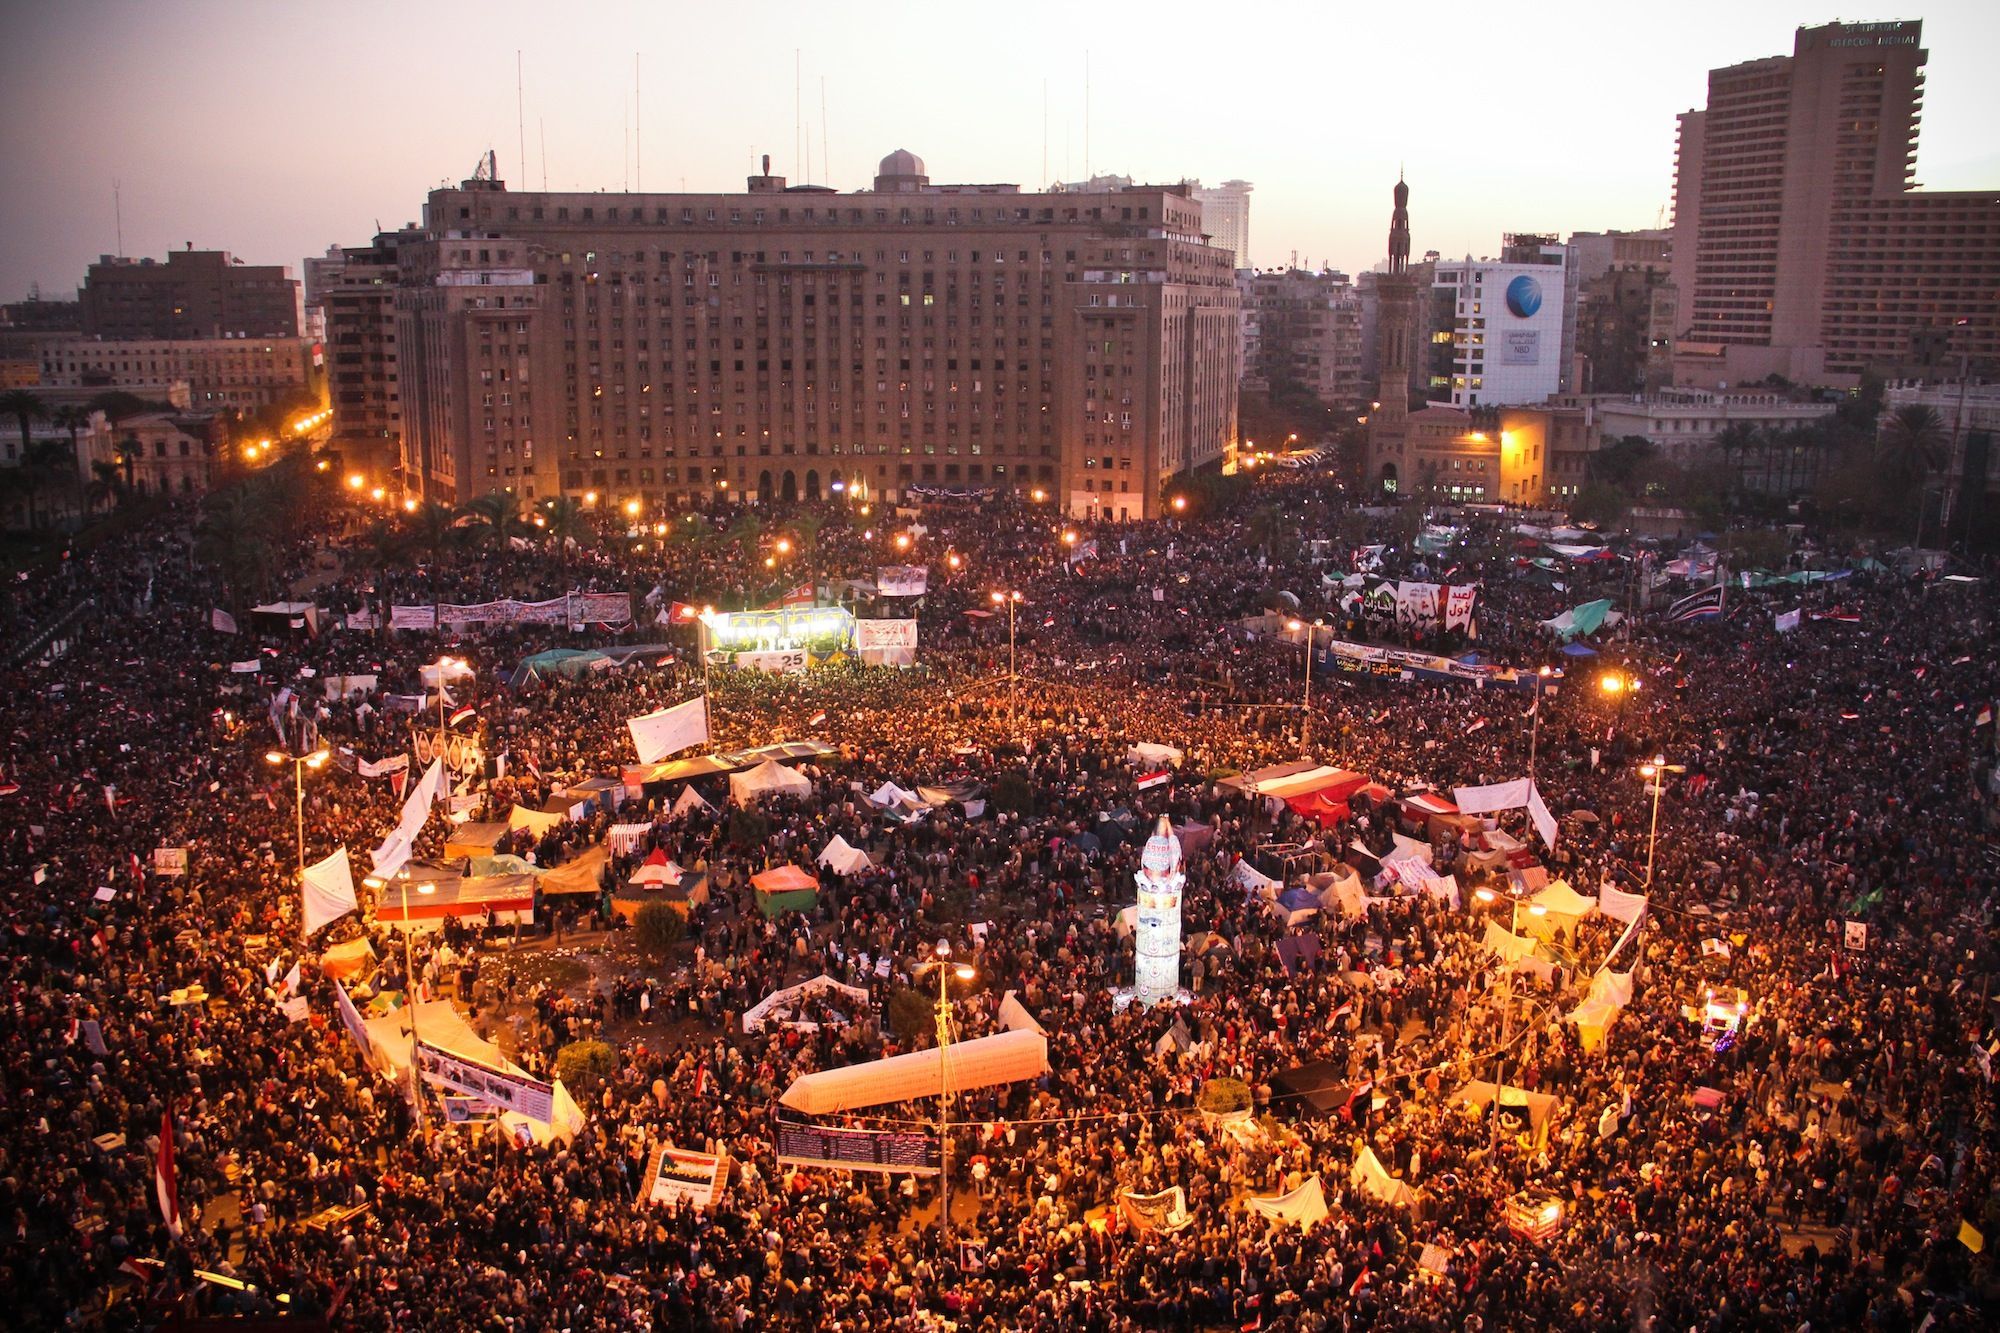 Arab Spring Revolutions In Progress